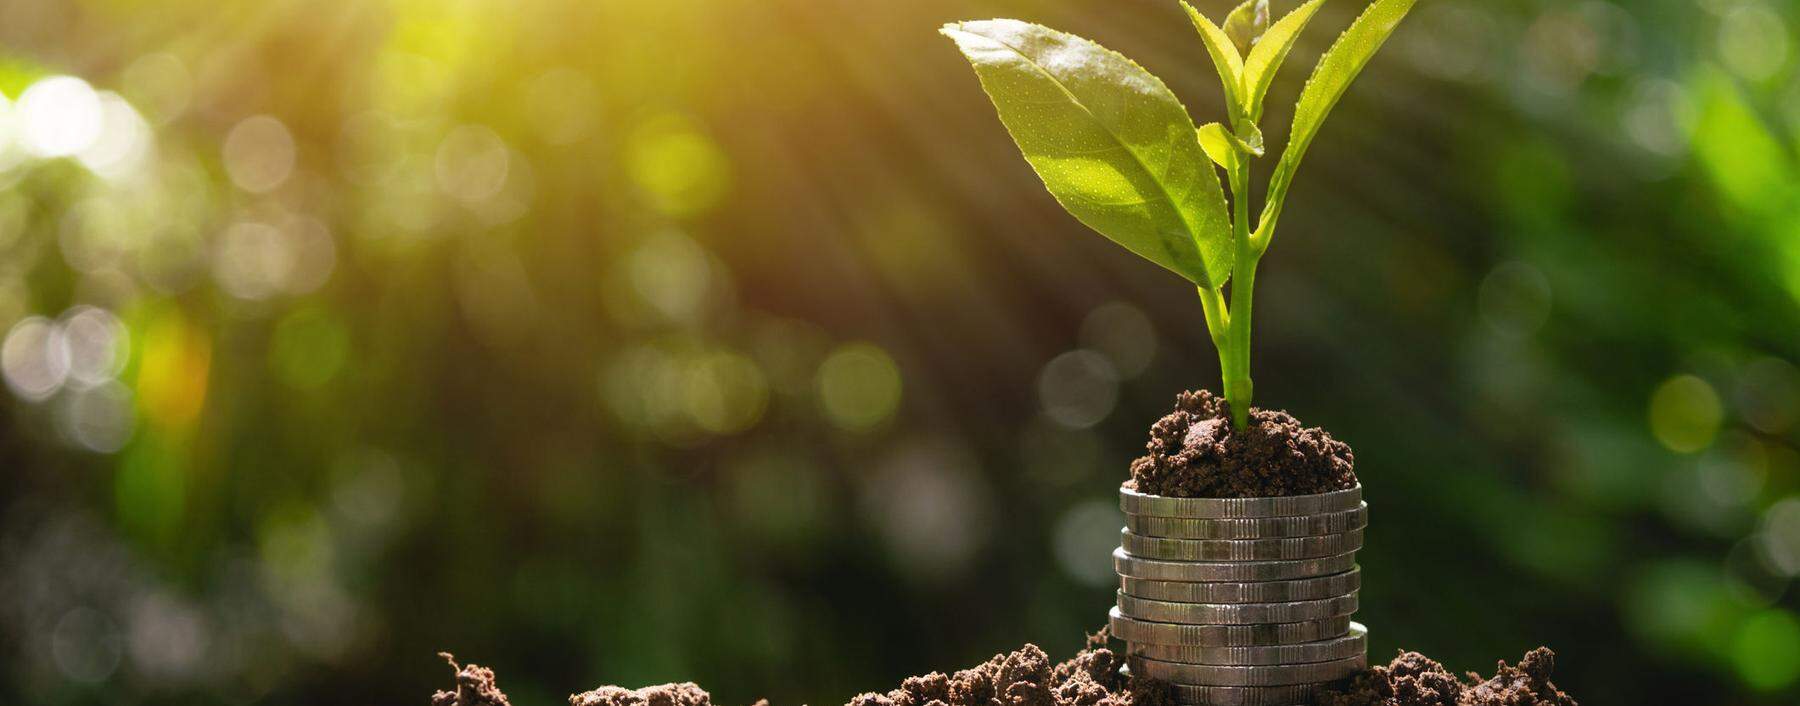 Der Begriff „Green Finance“ umfasst nach breitem Verständnis das gesamte Spektrum finanzwirtschaftlicher Ansätze und Instrumente zum Schutz von Umwelt und Klima.